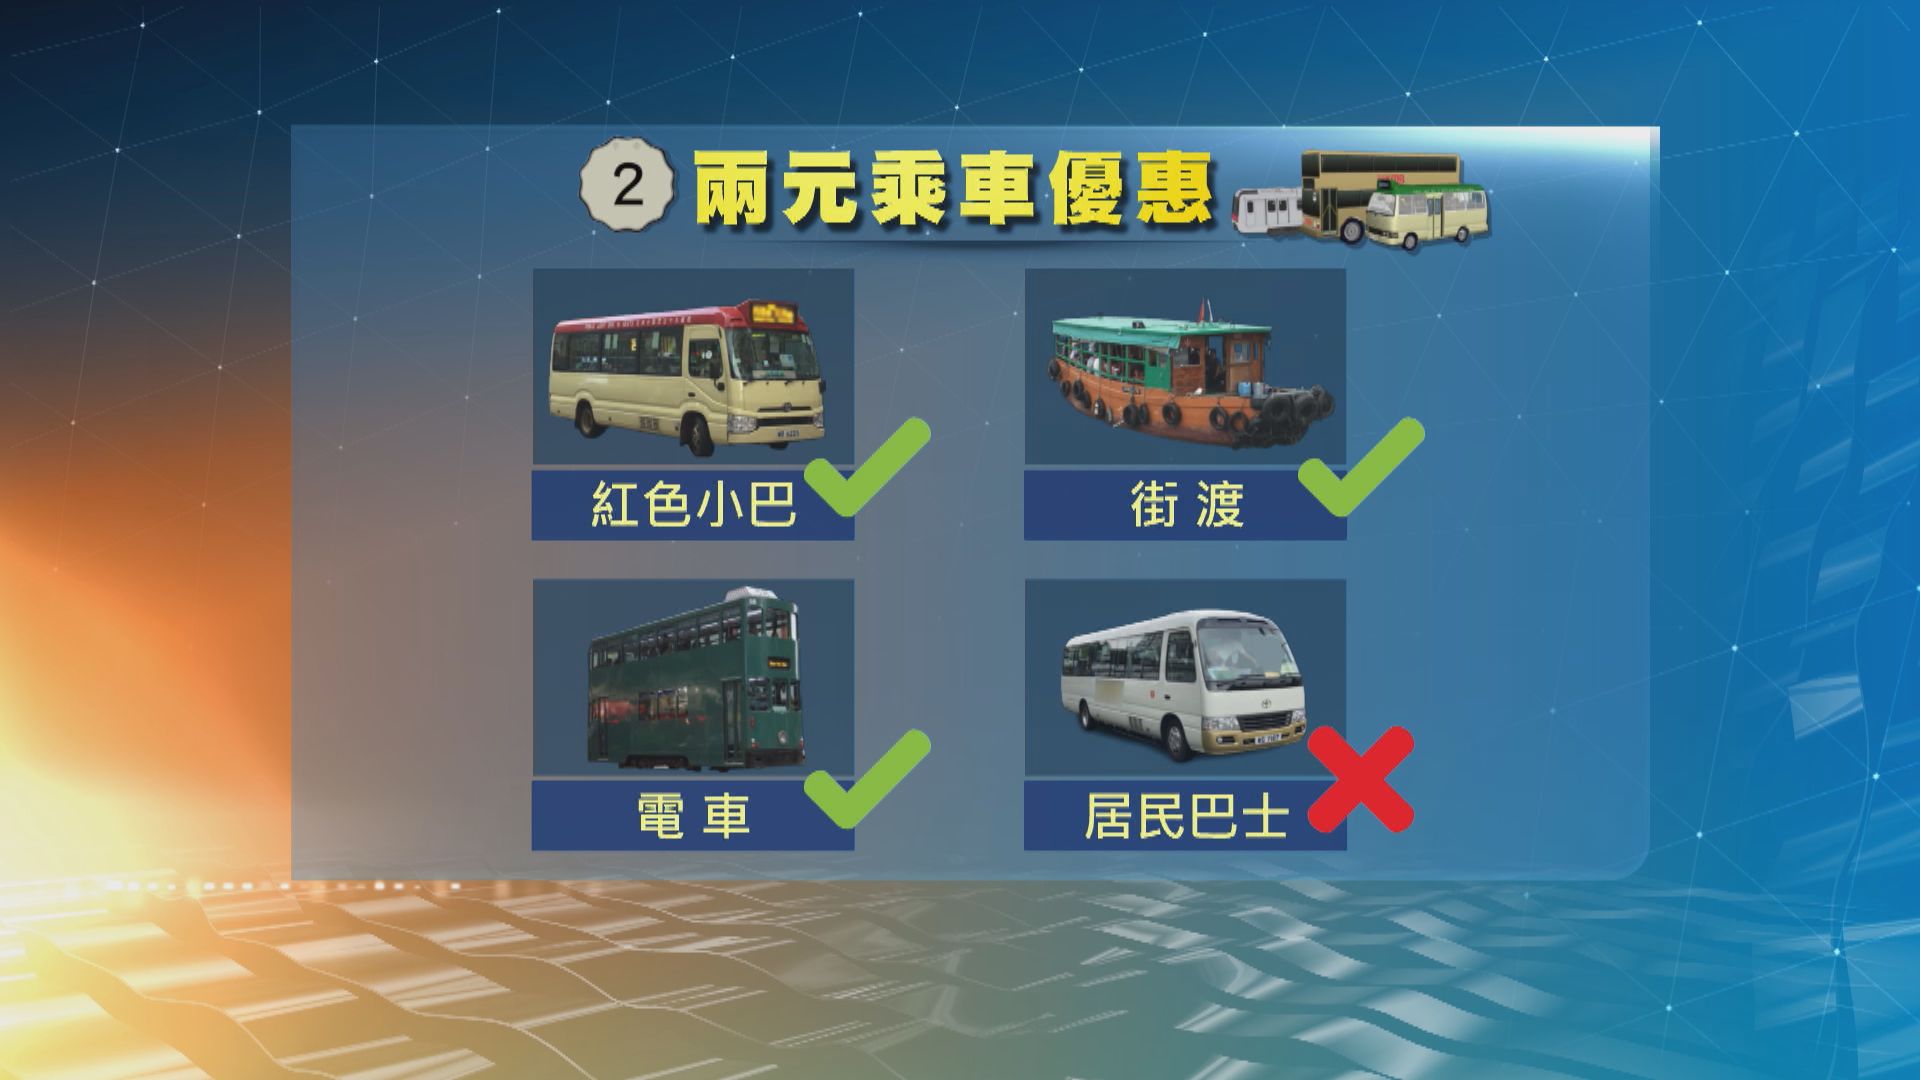 政府計劃明年將兩元乘車優惠擴展至紅色小巴及街渡等